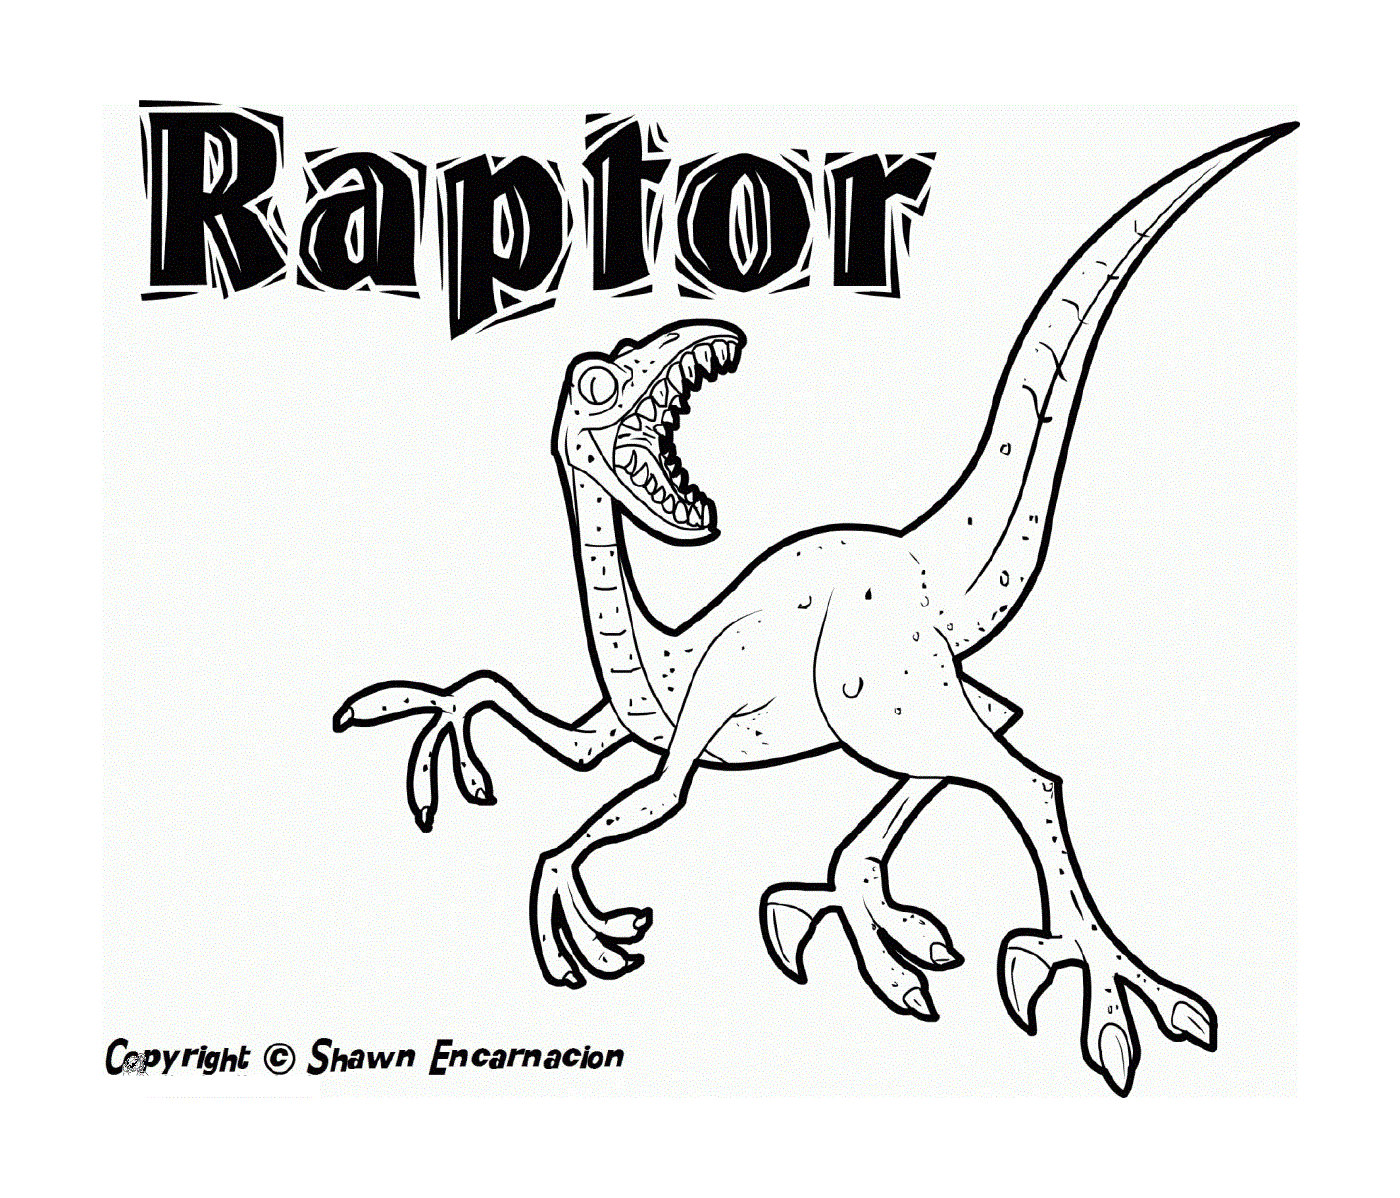   Raptor de Jurassic Park, prédateur agile 